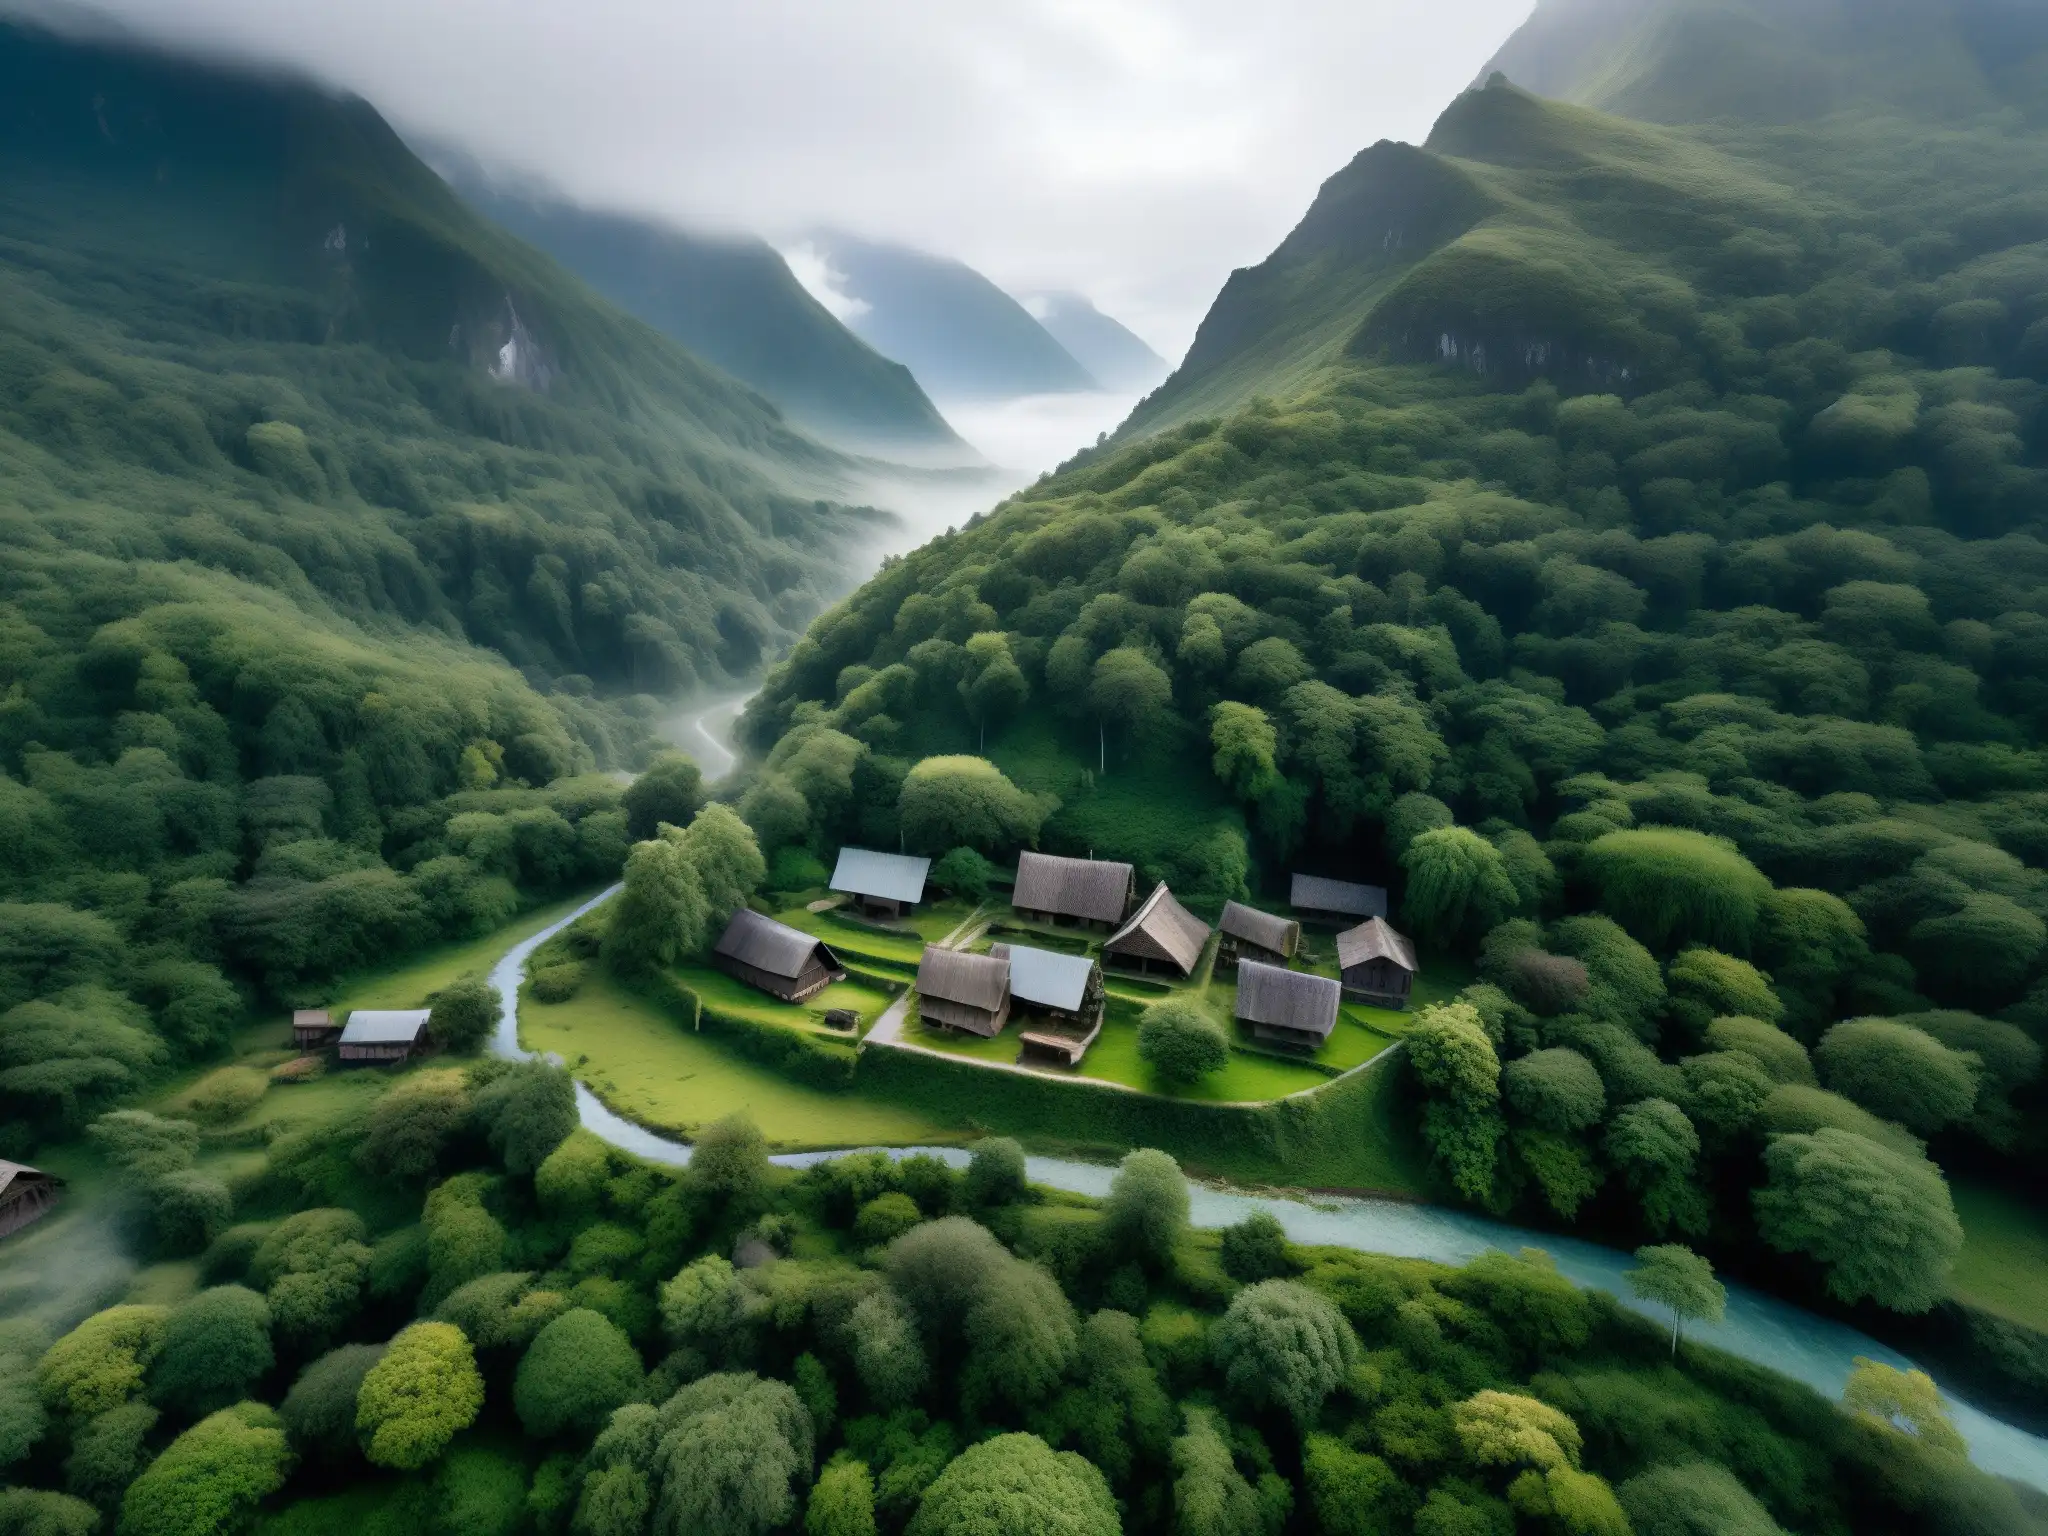 Vista aérea del misterioso pueblo Inunaki, envuelto en niebla y rodeado de montañas